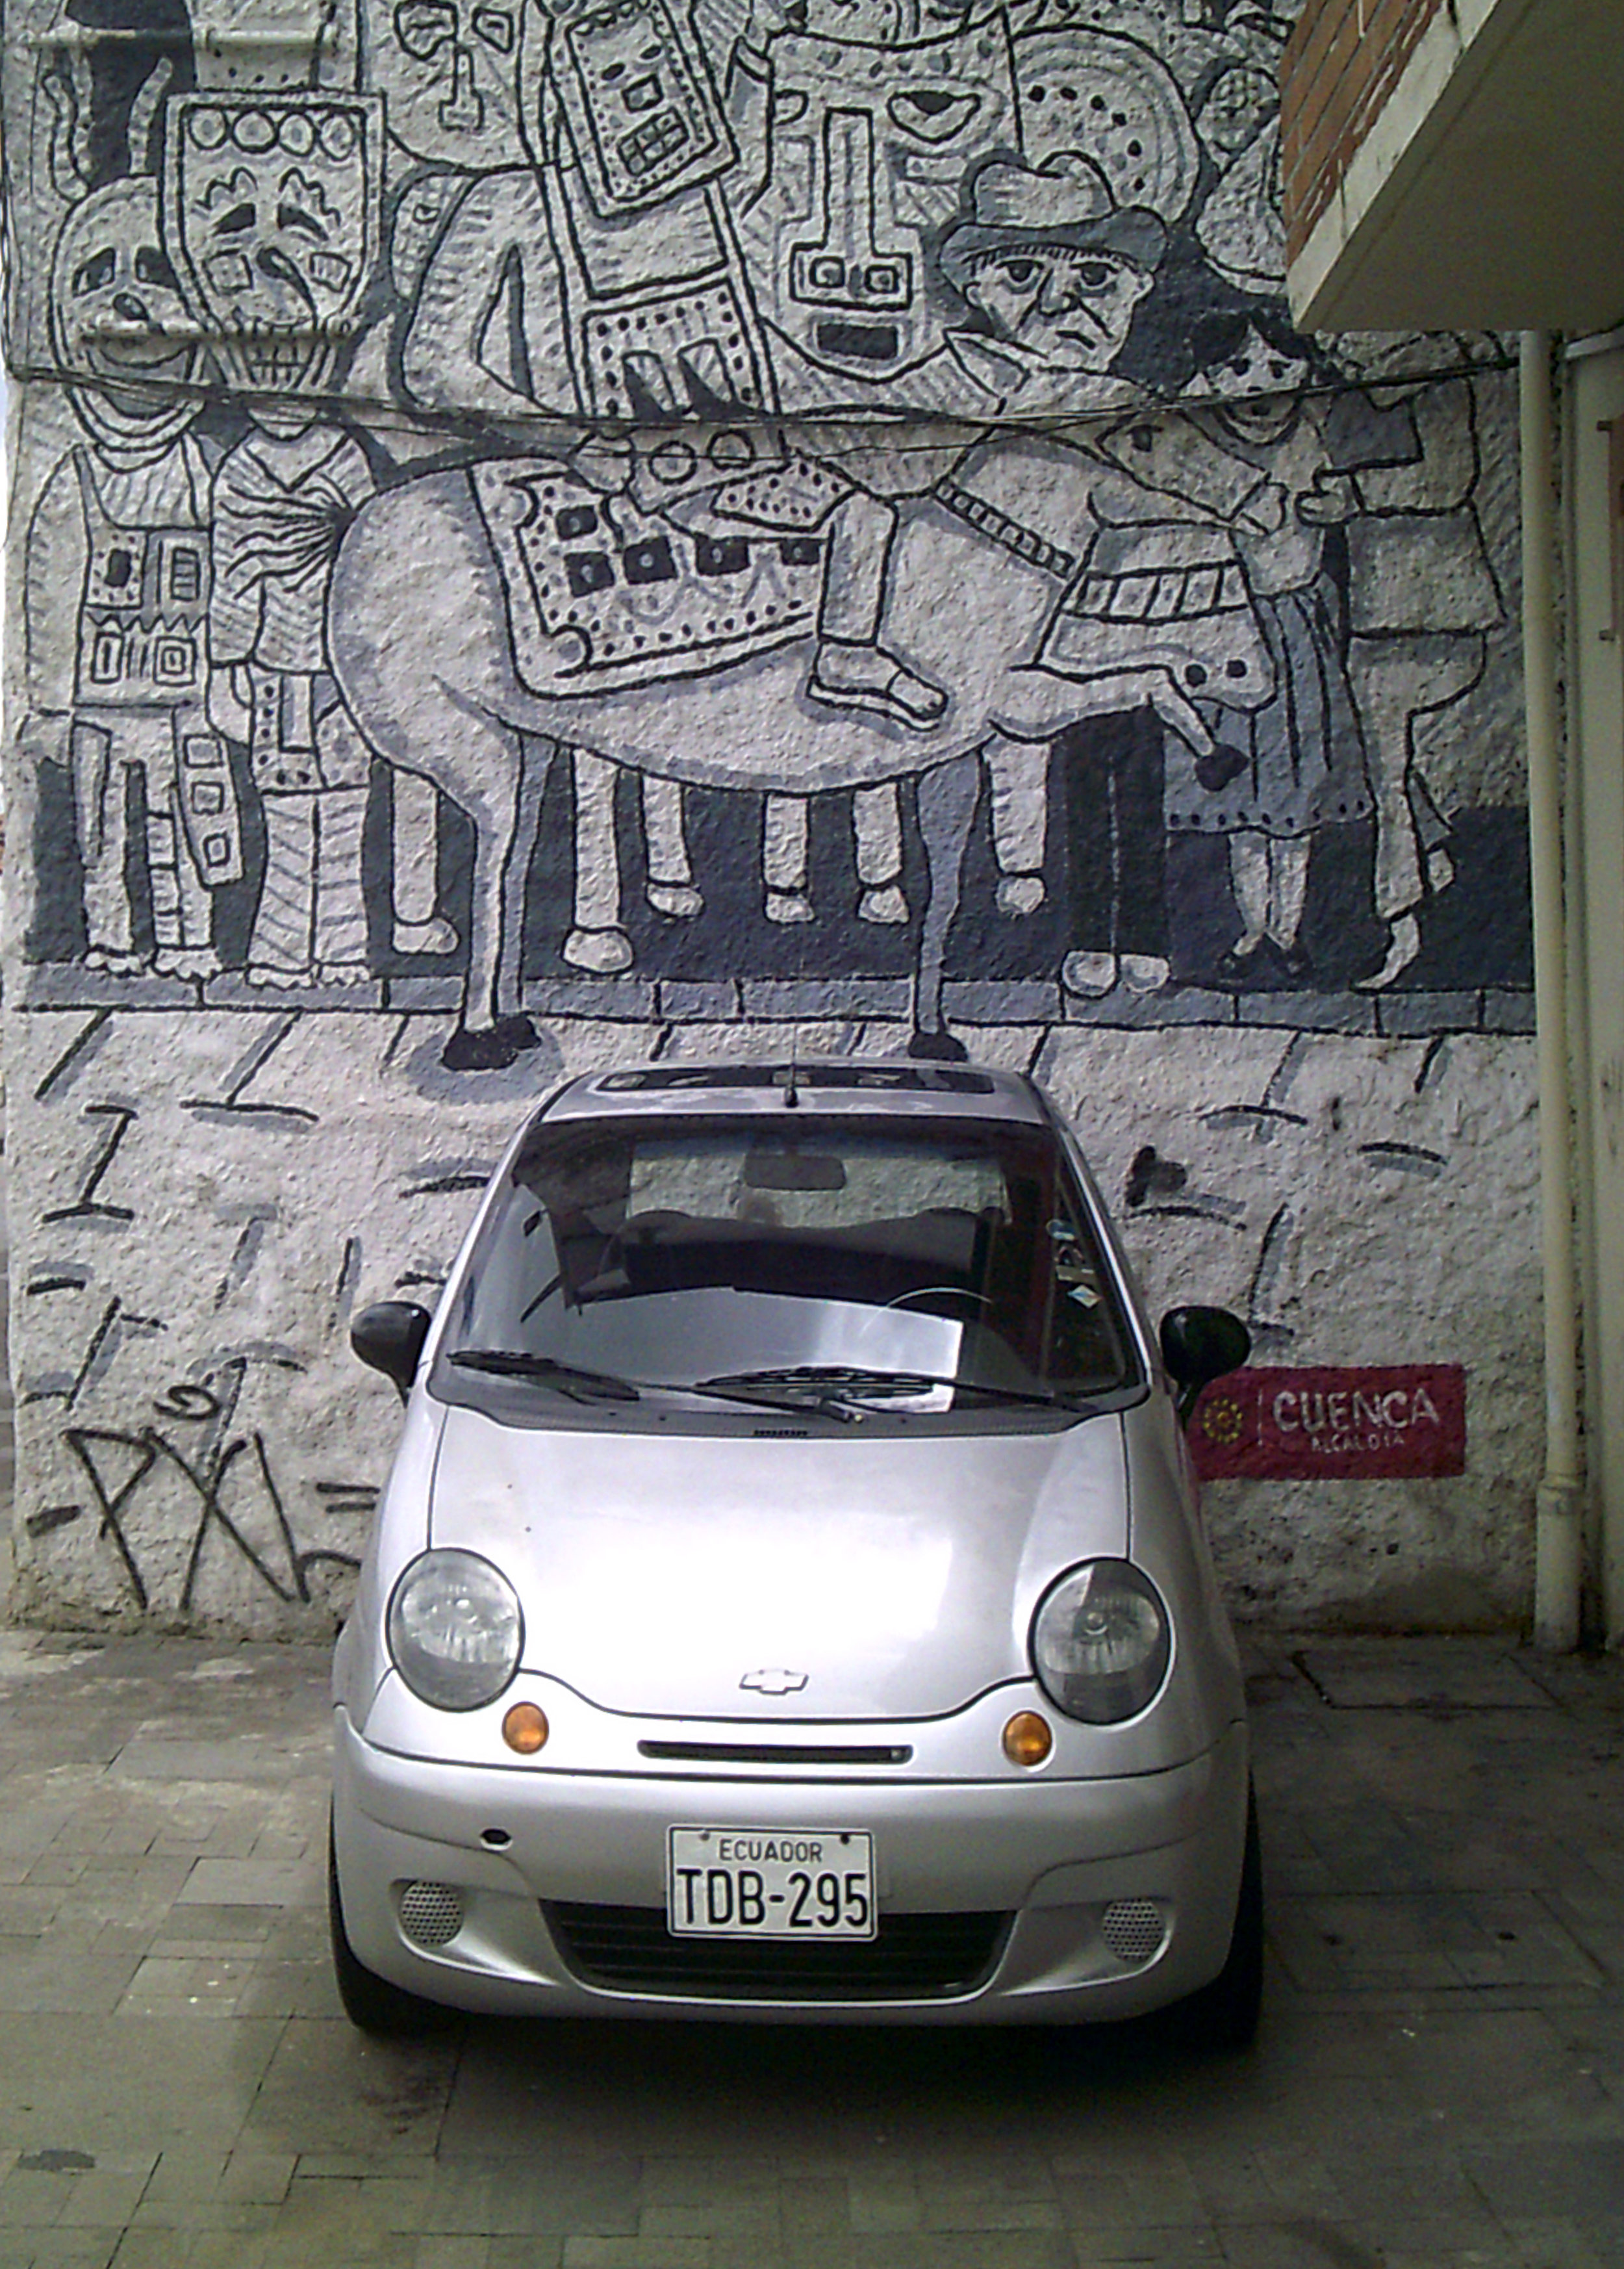 baby car and mural.jpg